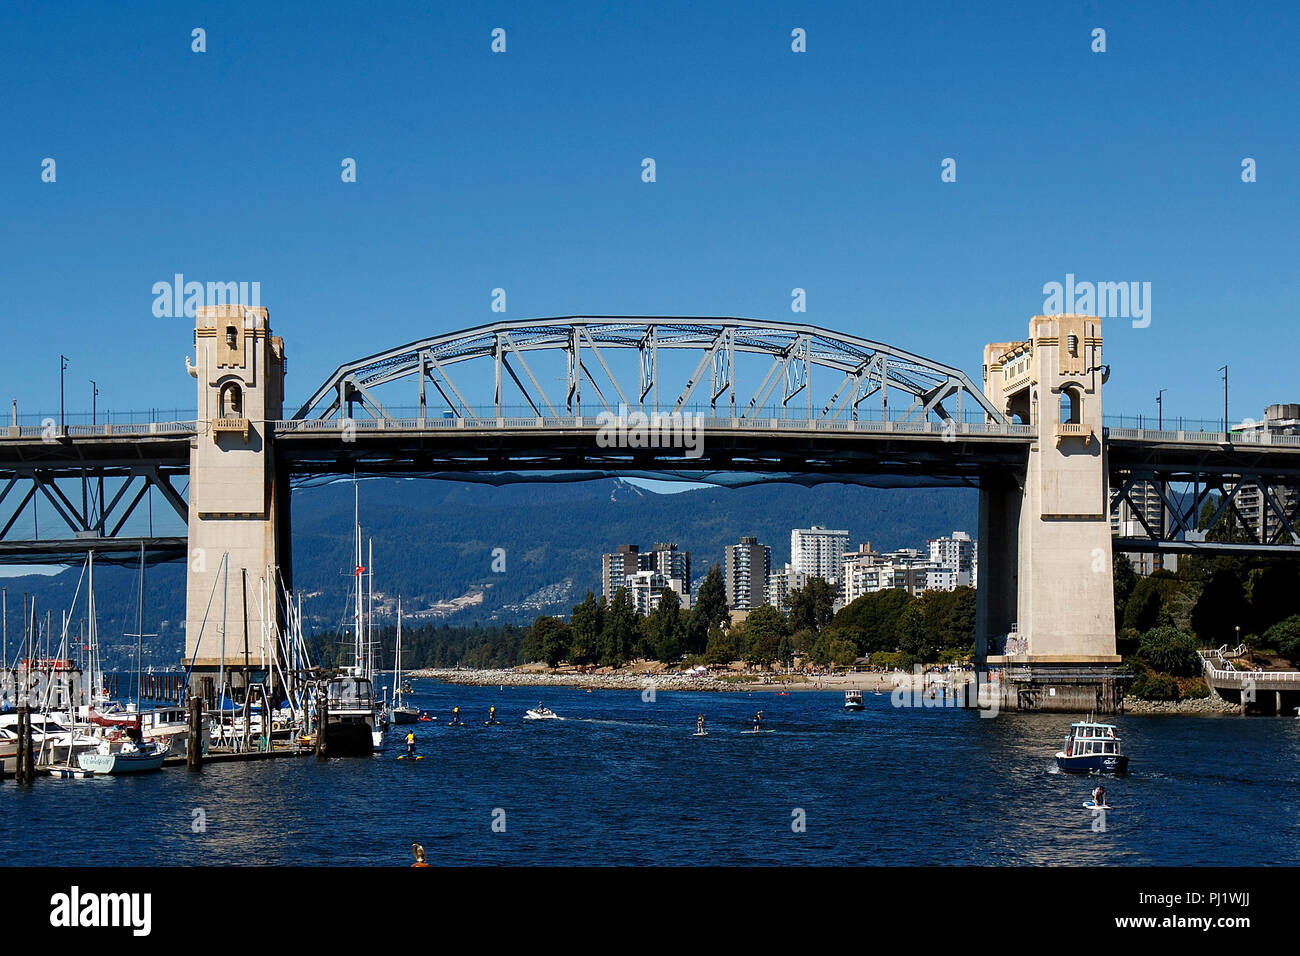 Granville Street Bridge, Granville Island, Granville, British Columbia, Canada Stock Photo